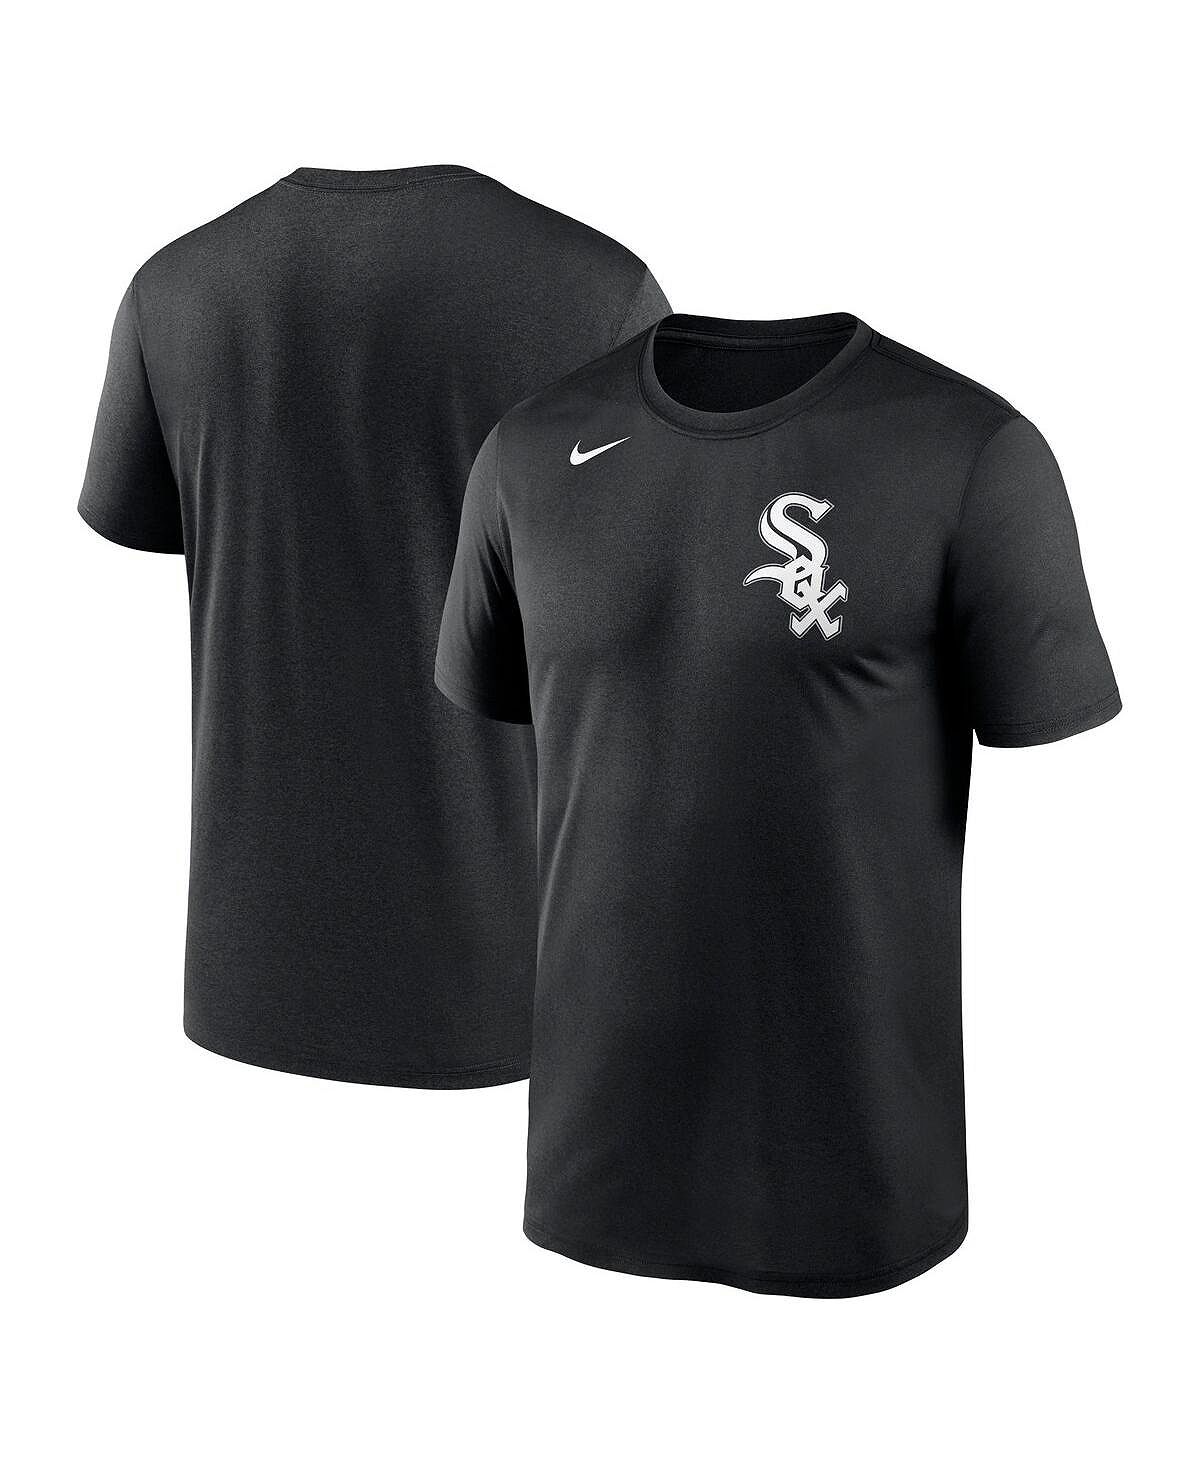 Мужская черная футболка Chicago White Sox New Legend с надписью Nike